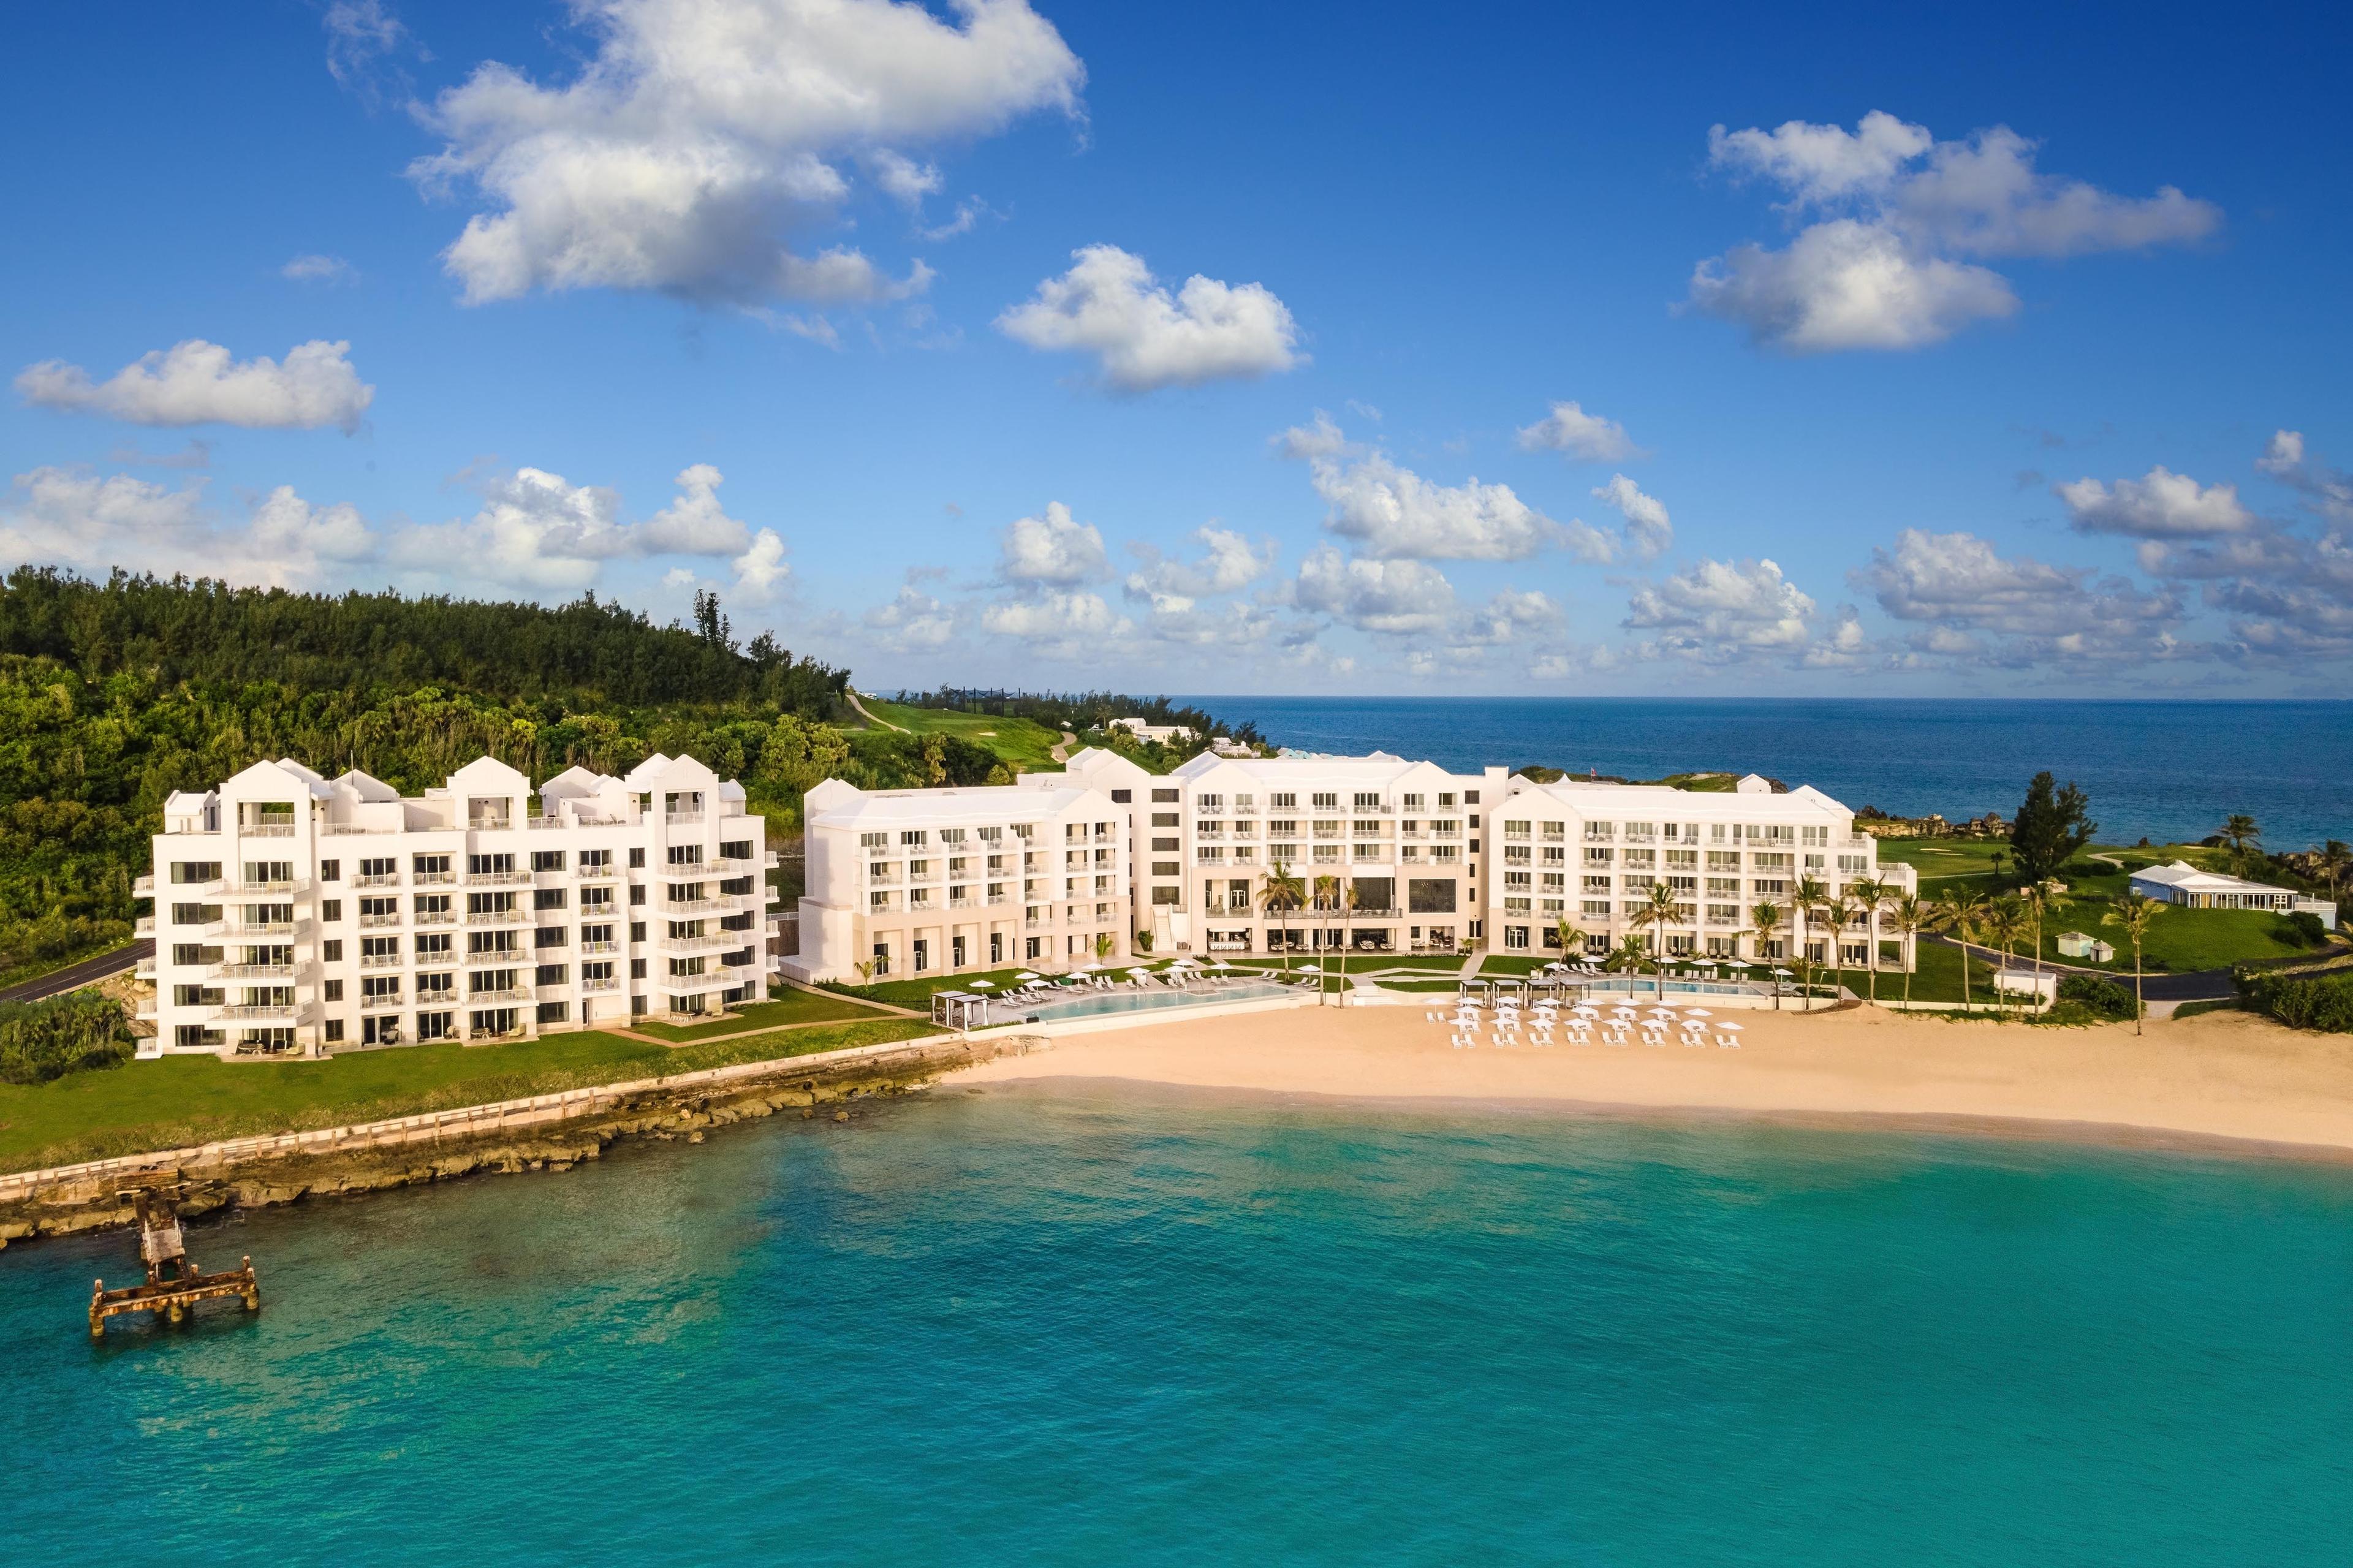 The St. Regis Bermuda Resort in St George, Bermuda